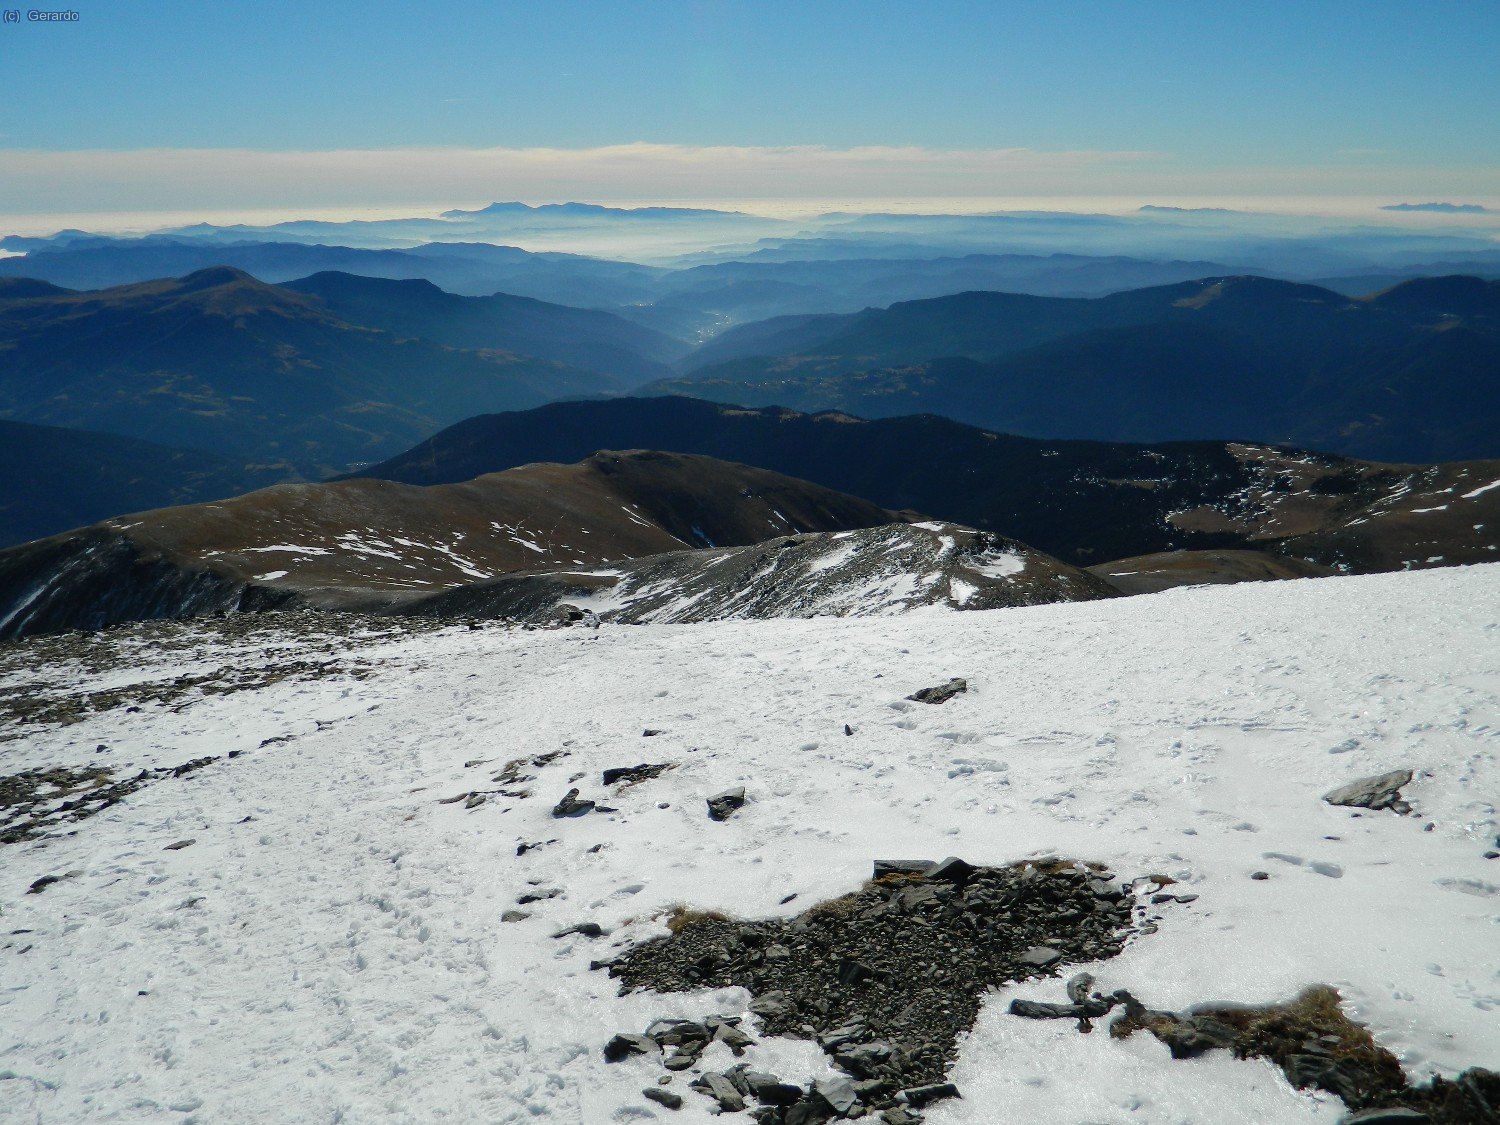 Y el horizonte meridional desde el borde del altiplano cimero, el primer lugar con nieve continua. Al fondo, Montseny-Matagalls, y a la derecha del todo Montserrat.